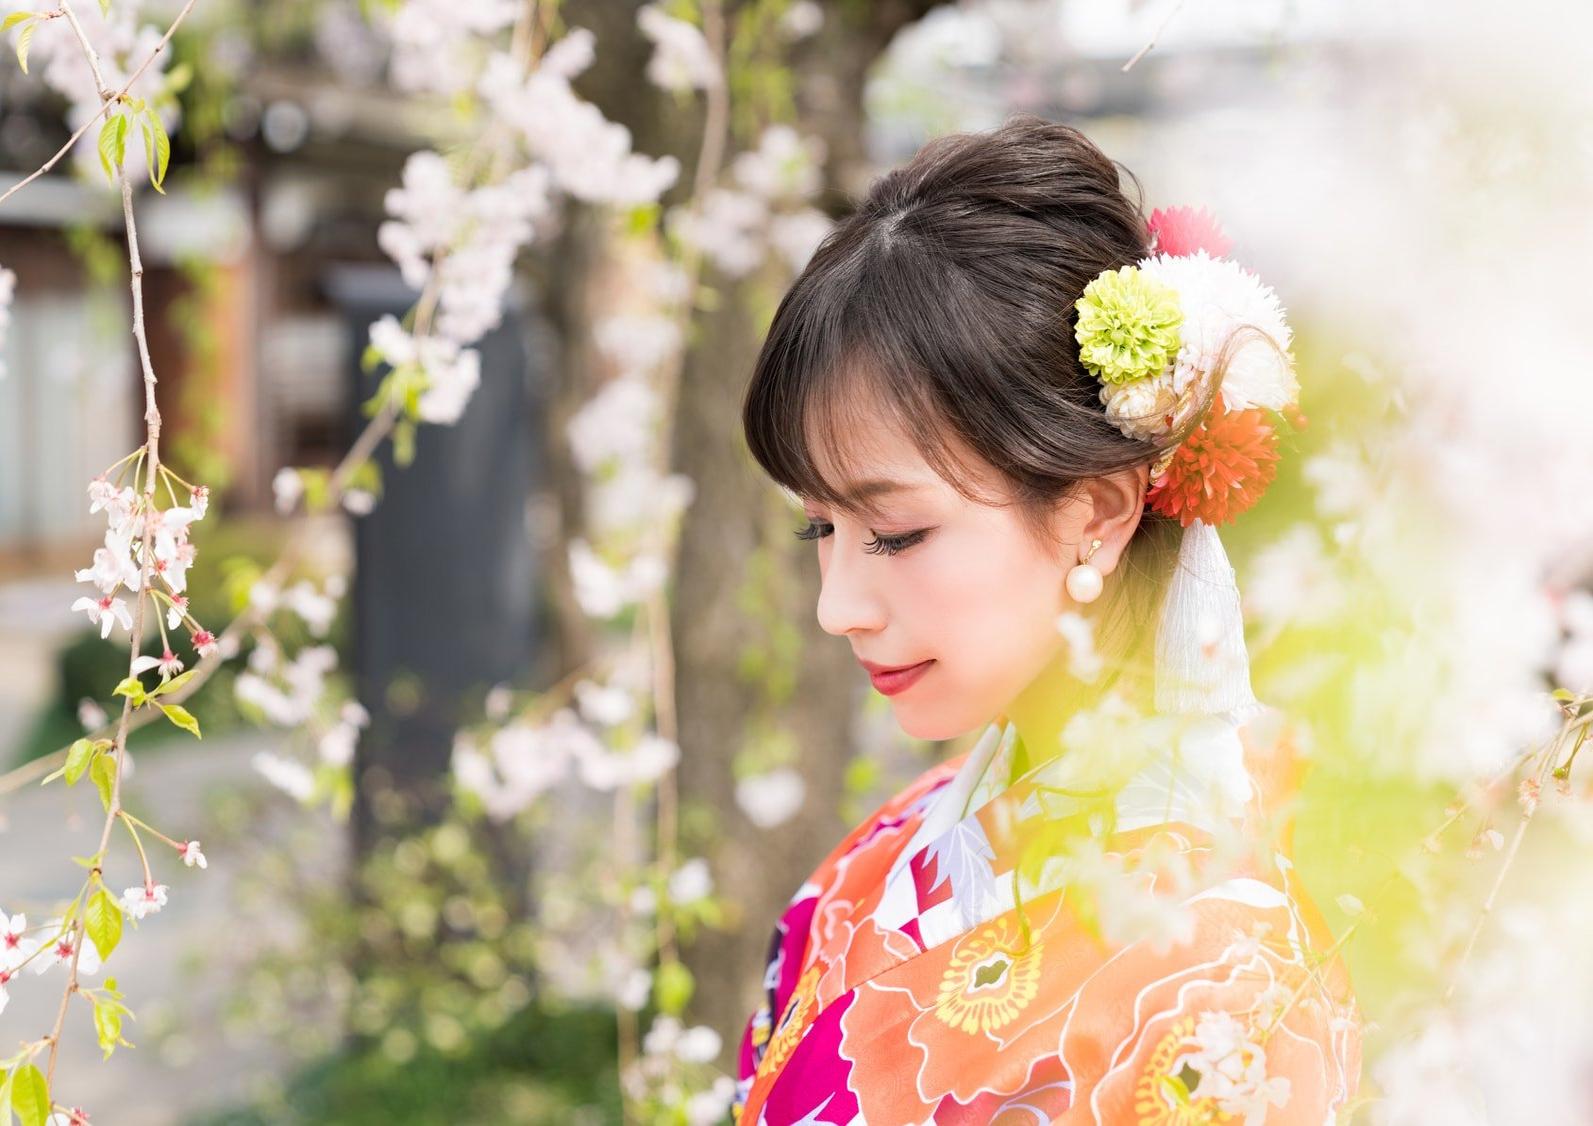 关于和服的传统文化和历史 Karuta 让我们一起学习日本吧